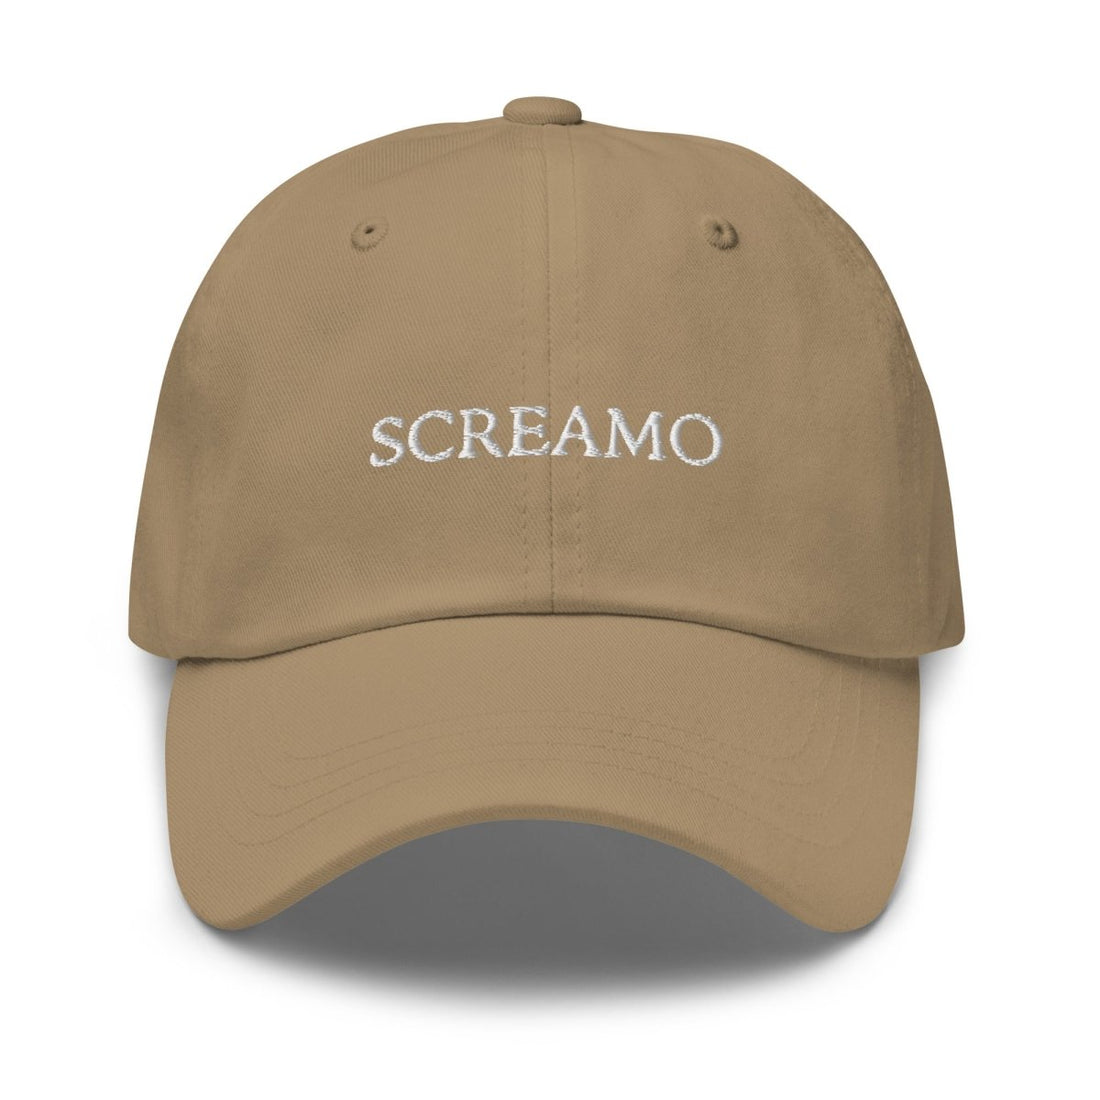 Screamo Dad hat